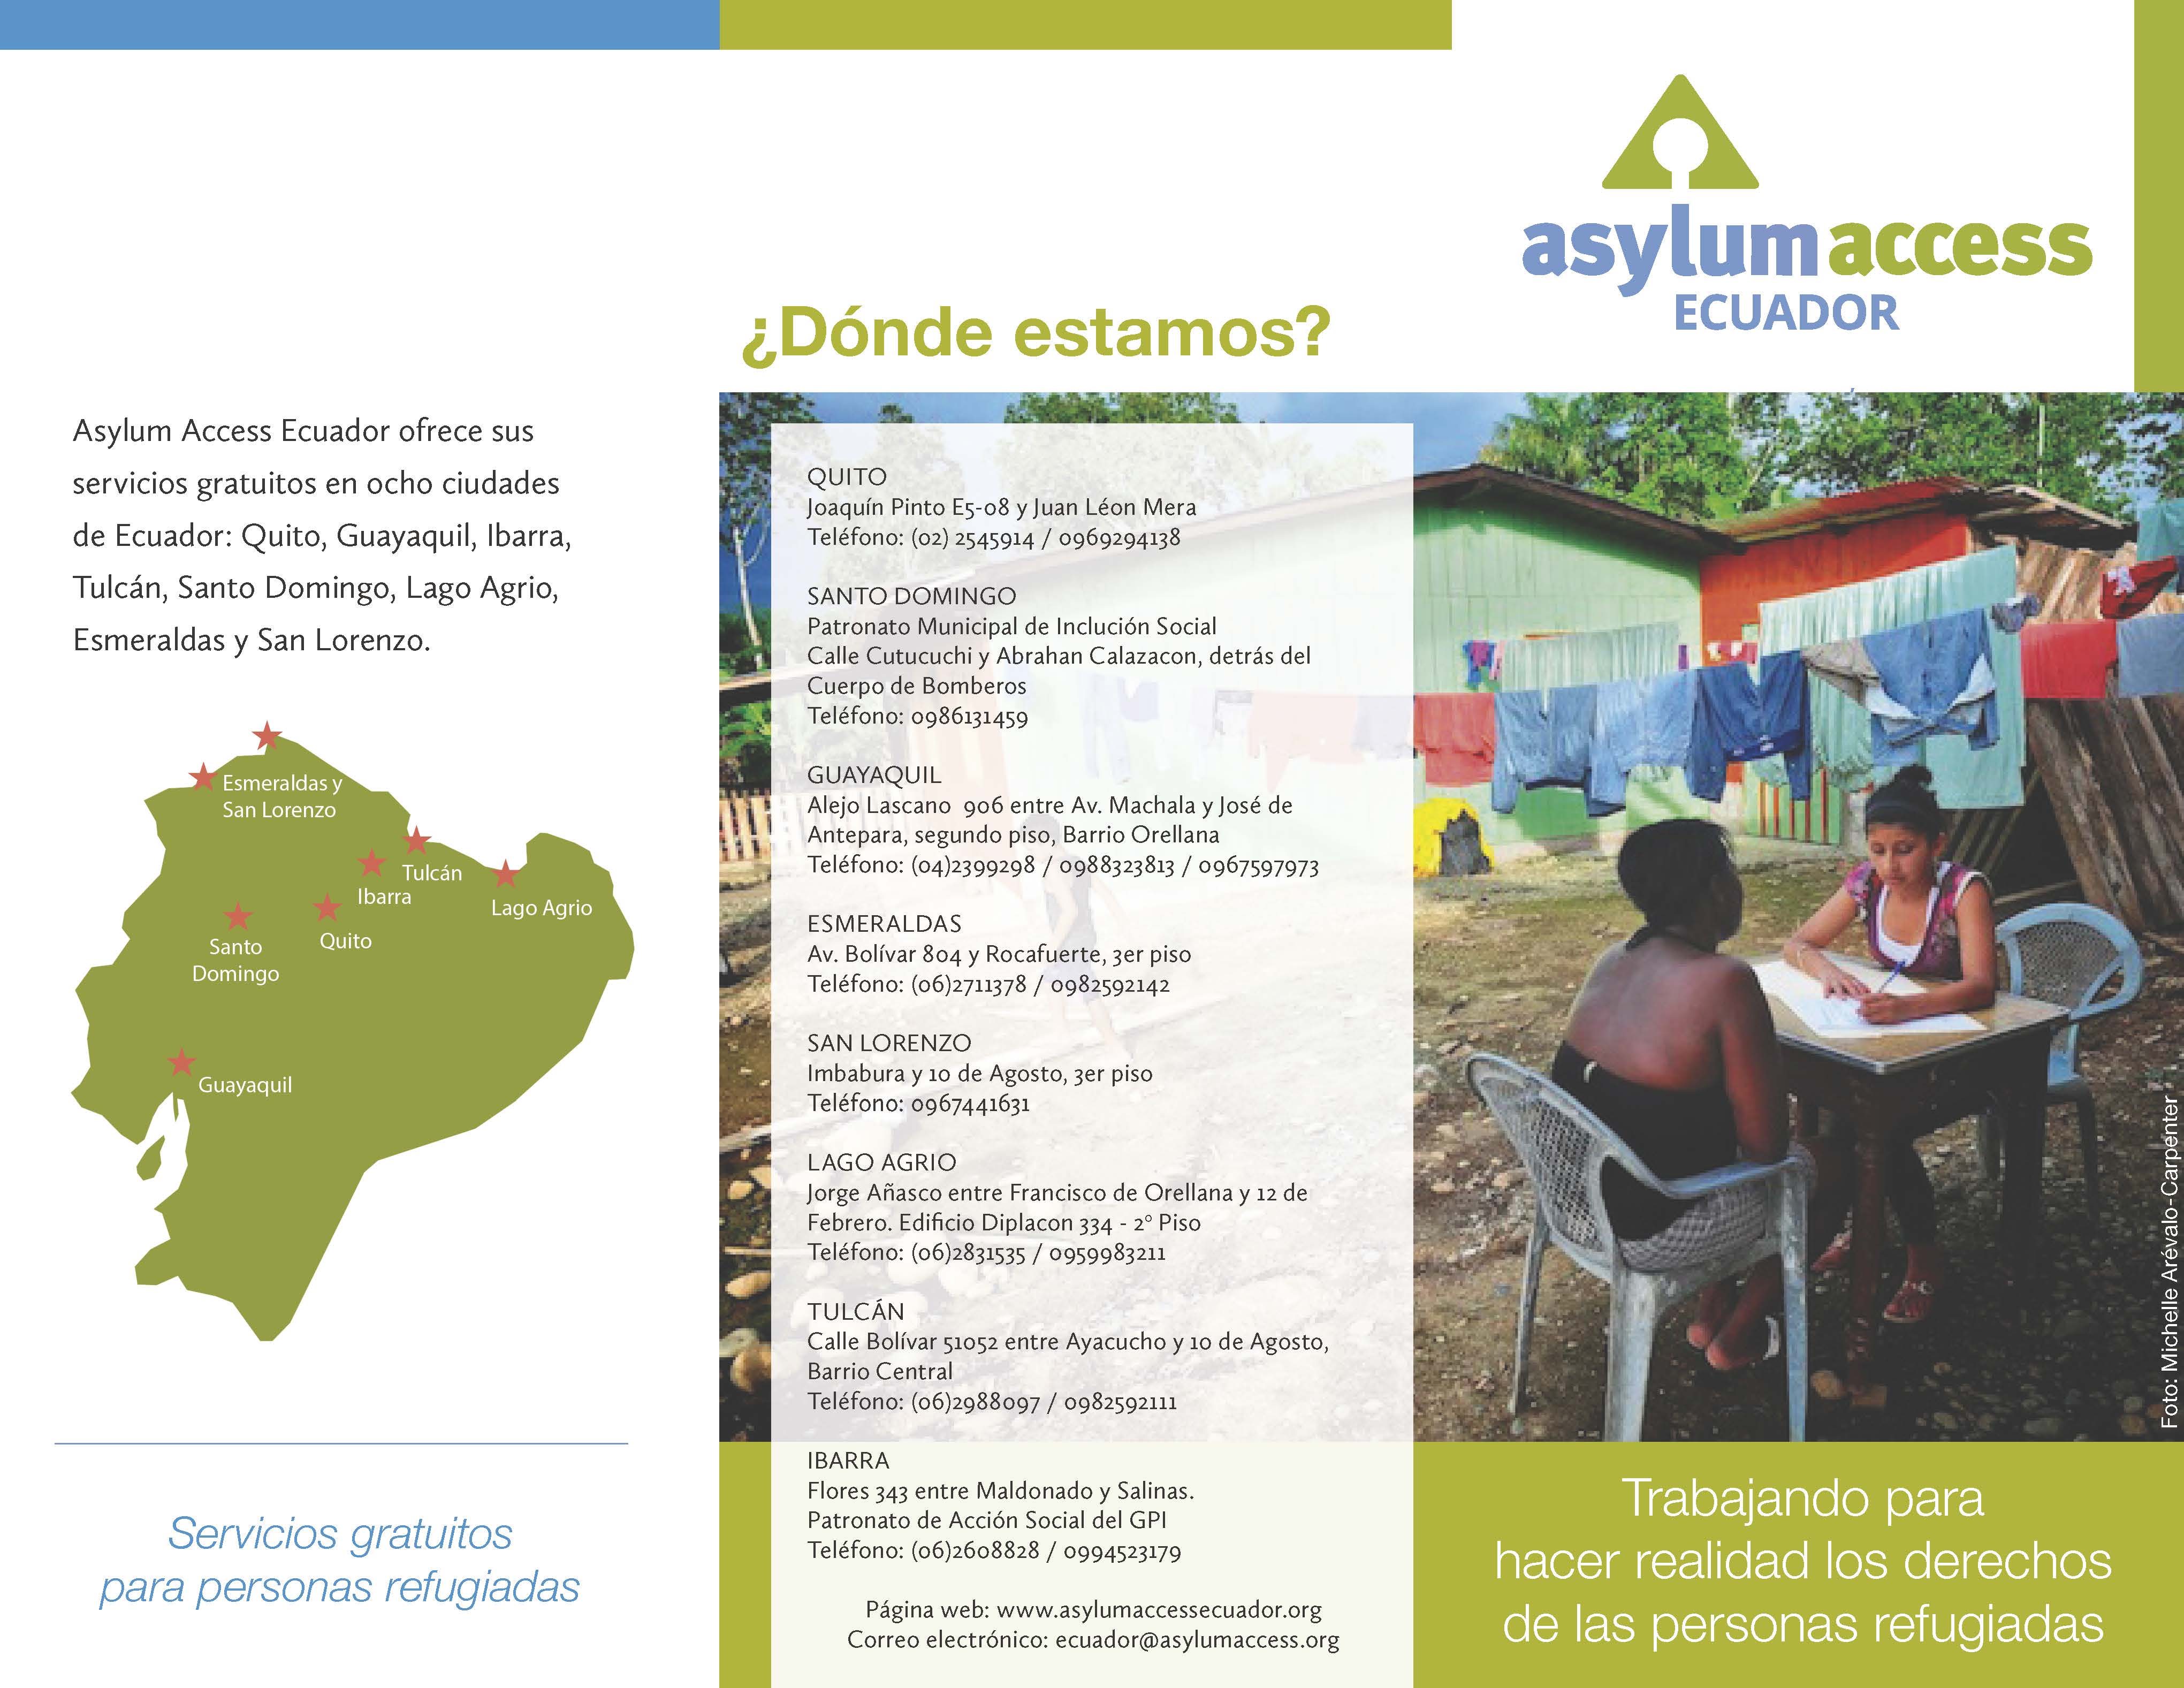 Asylum access ECUADOR – dossier